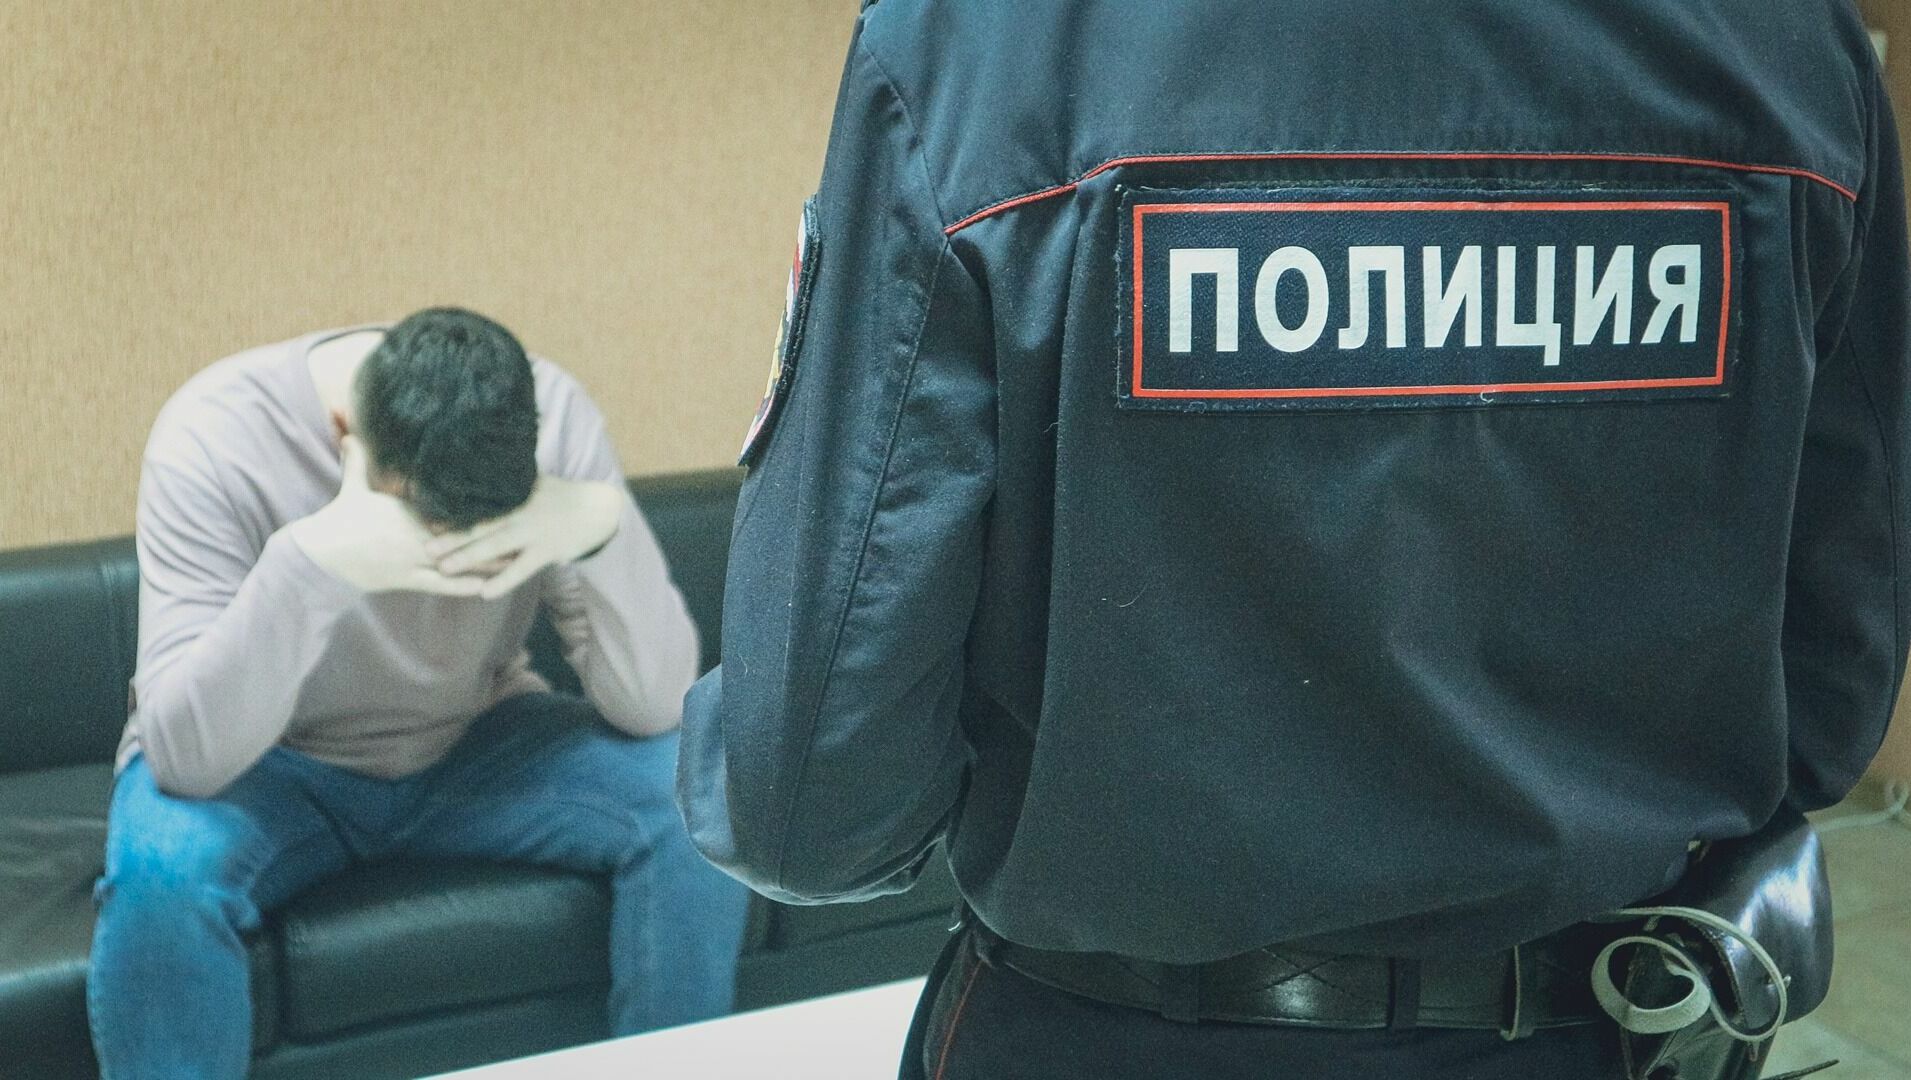 Более 20 полицейских дают показания о деятельности ростовского ОПГ